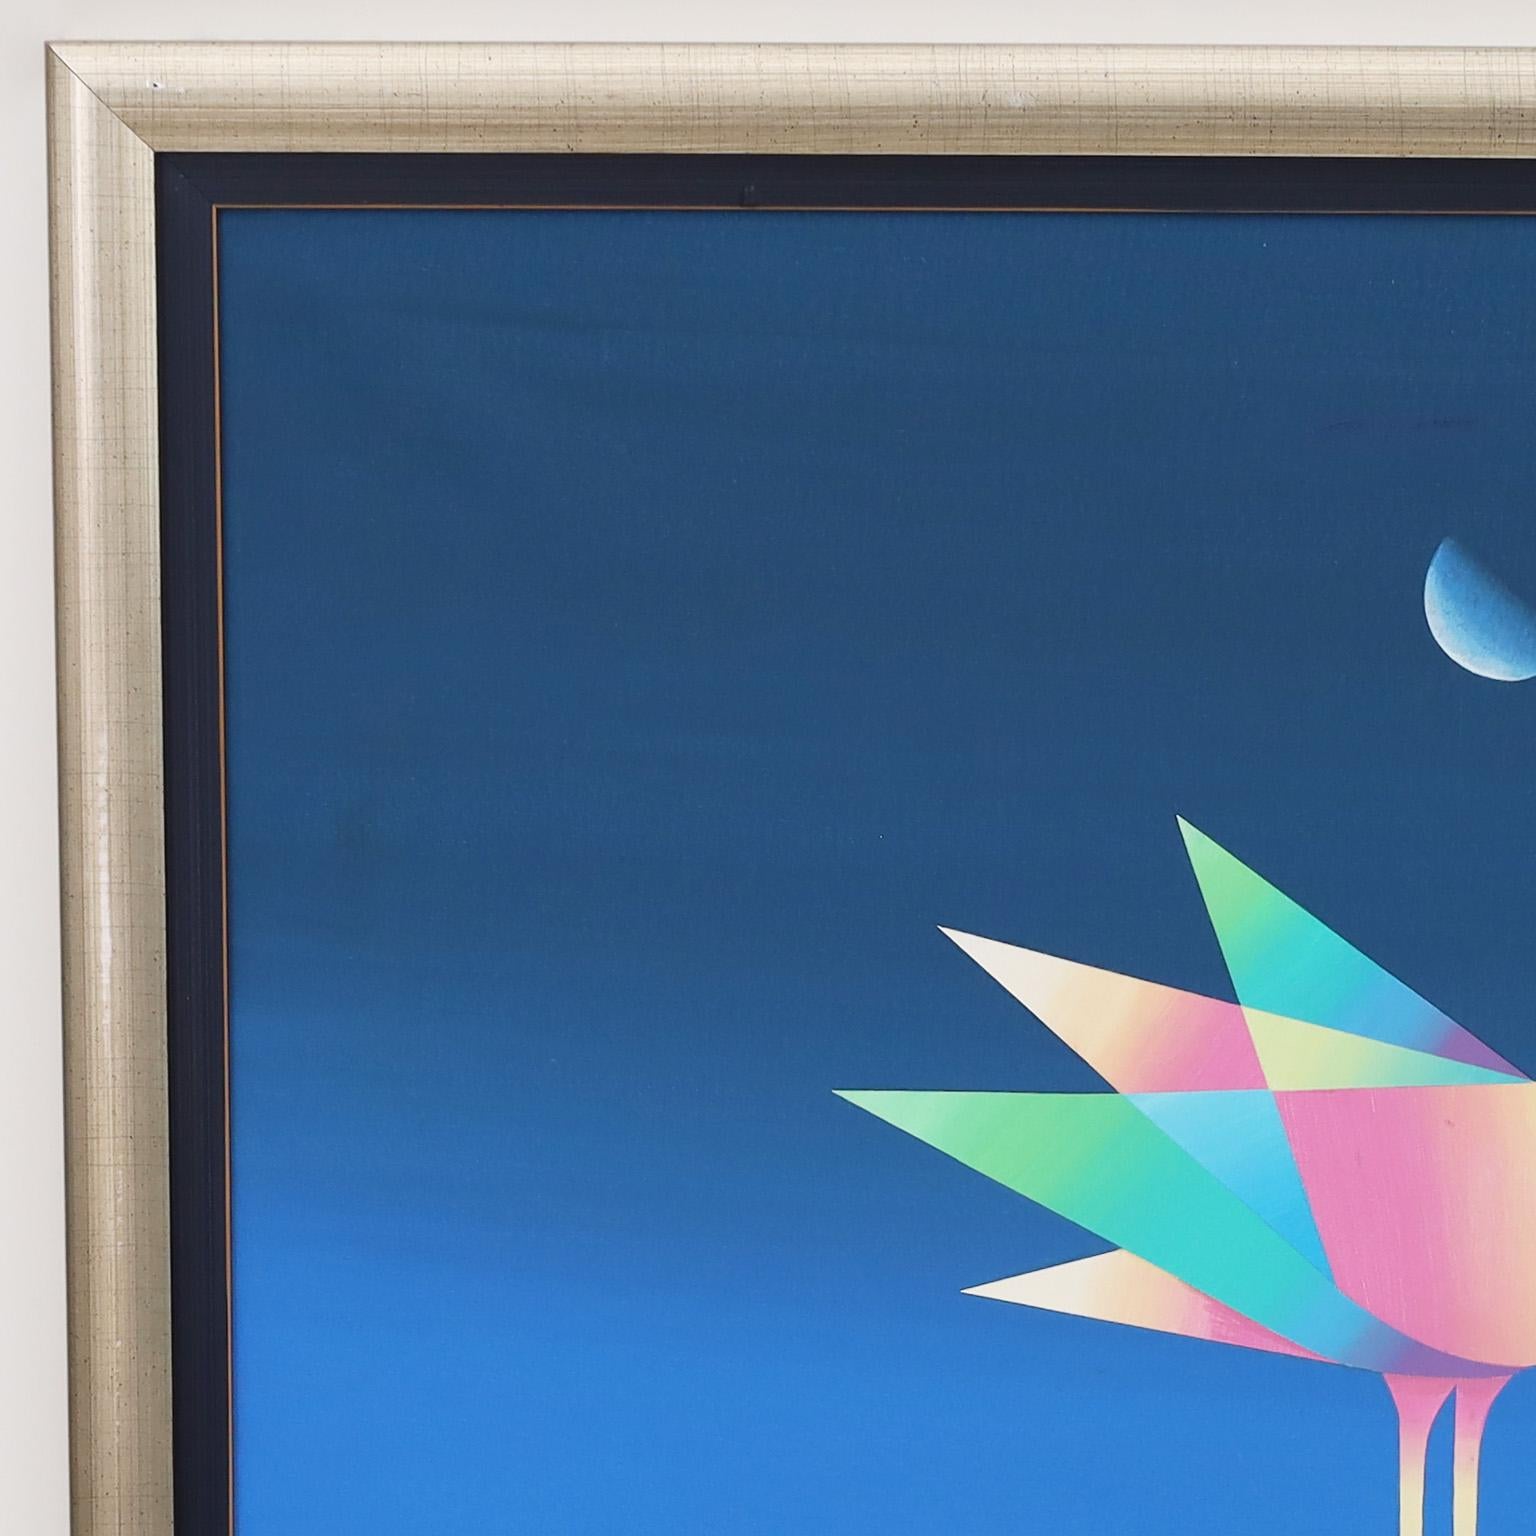 Aufregendes Ölgemälde auf Leinwand einer bunten Taube auf einem Rad mit geometrischen Verwicklungen unter einem Halbmond und über einer Landschaft. Ausgeführt in einem modernen surrealistischen Stil. Signiert von dem bekannten brasilianischen